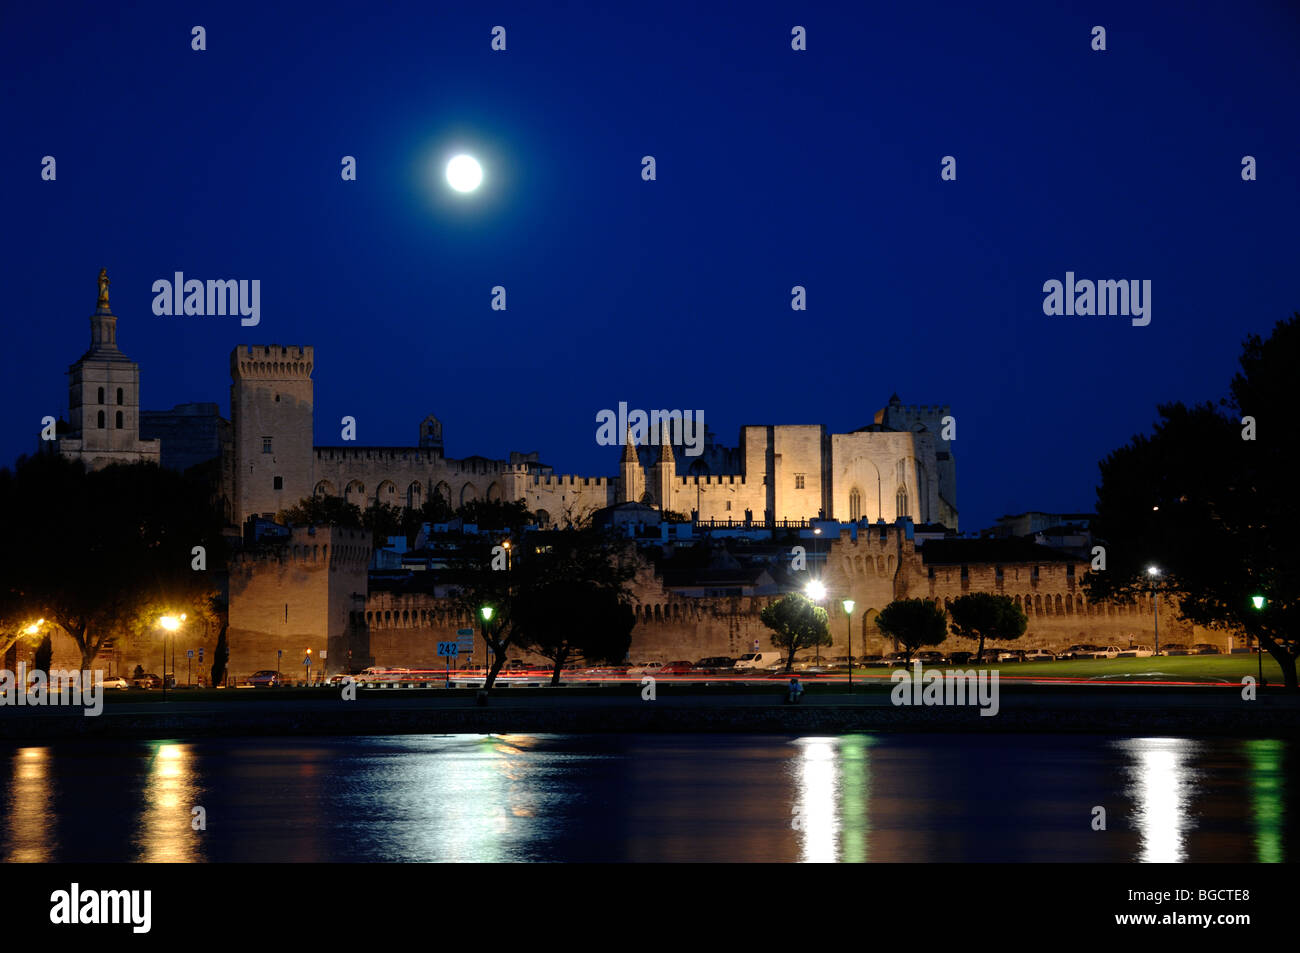 La pleine lune sur le Palais des Papes ou Palais des Papes avec les lumières reflétées dans le fleuve Rhône, Avignon, Provence, France Banque D'Images